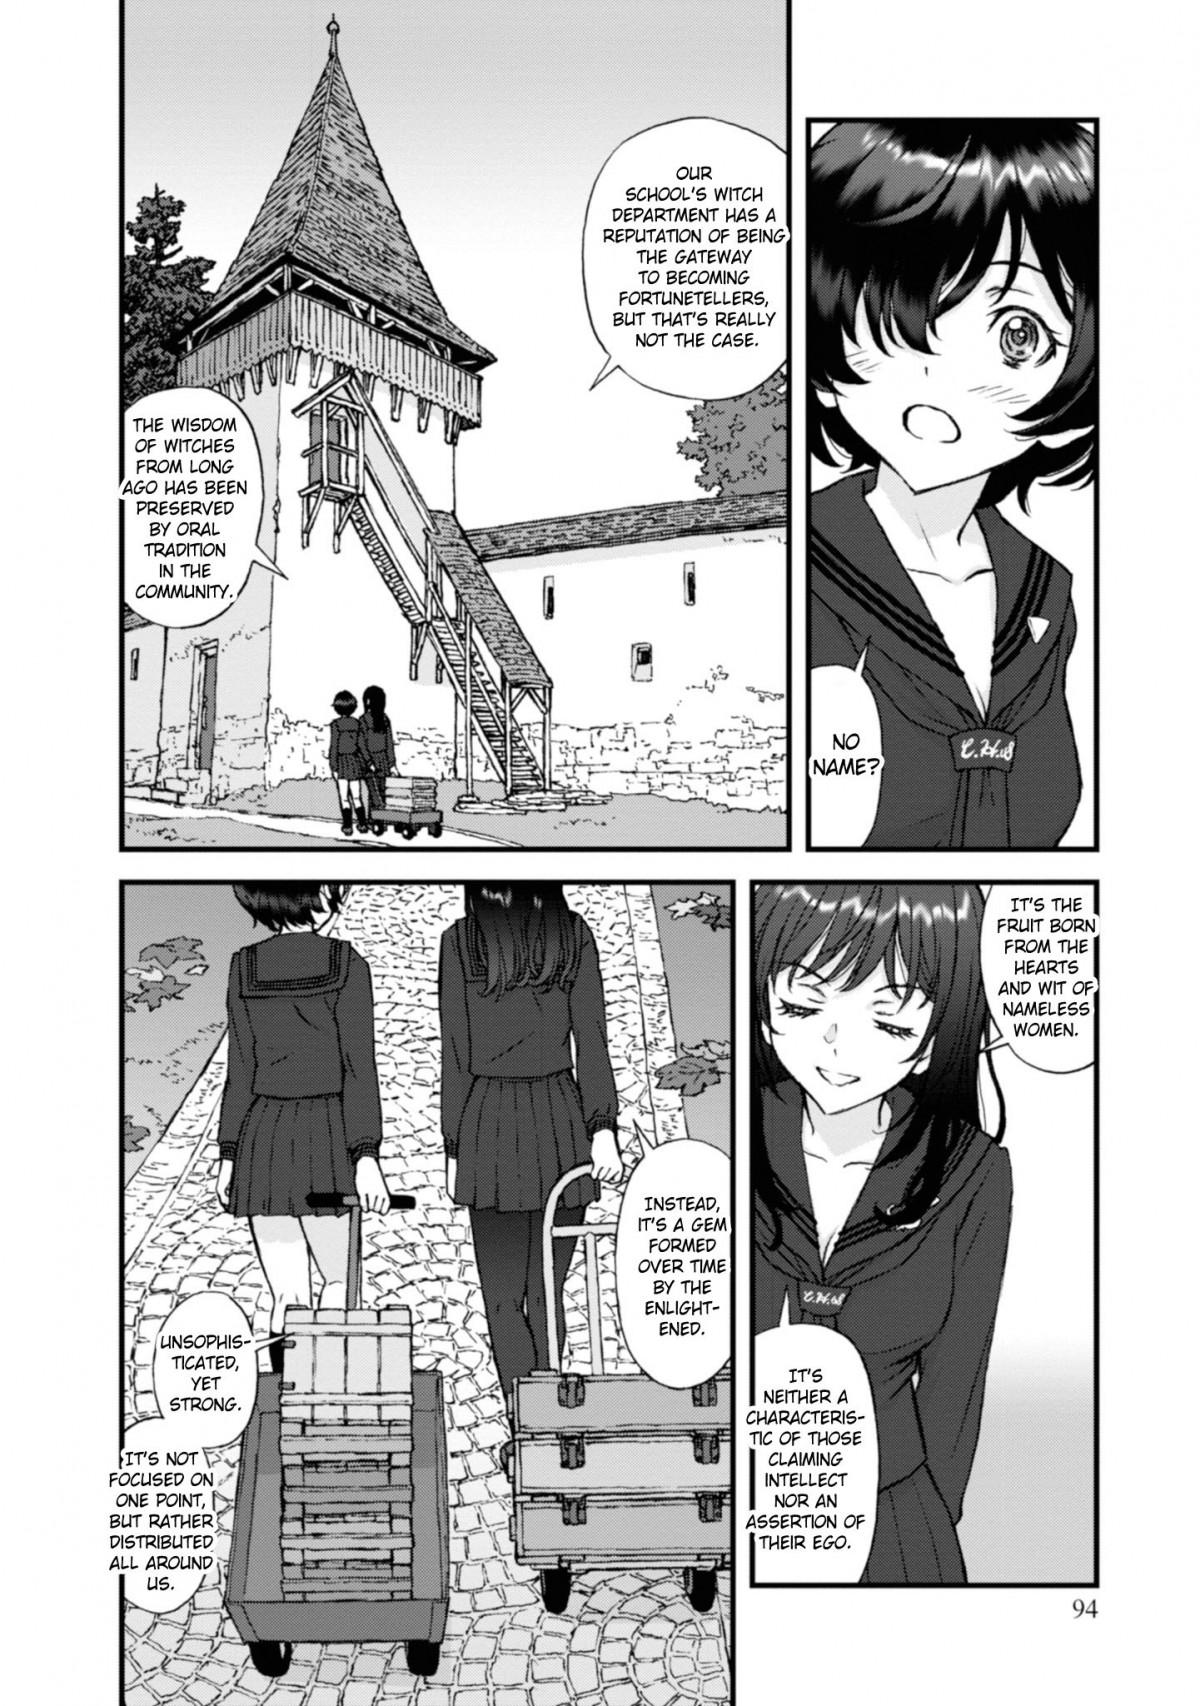 Wiskundige Horen van Formuleren GIRLS und PANZER - Momi no Ki to Tetsu no Hane no Majo Ch.8 Page 1 - Mangago